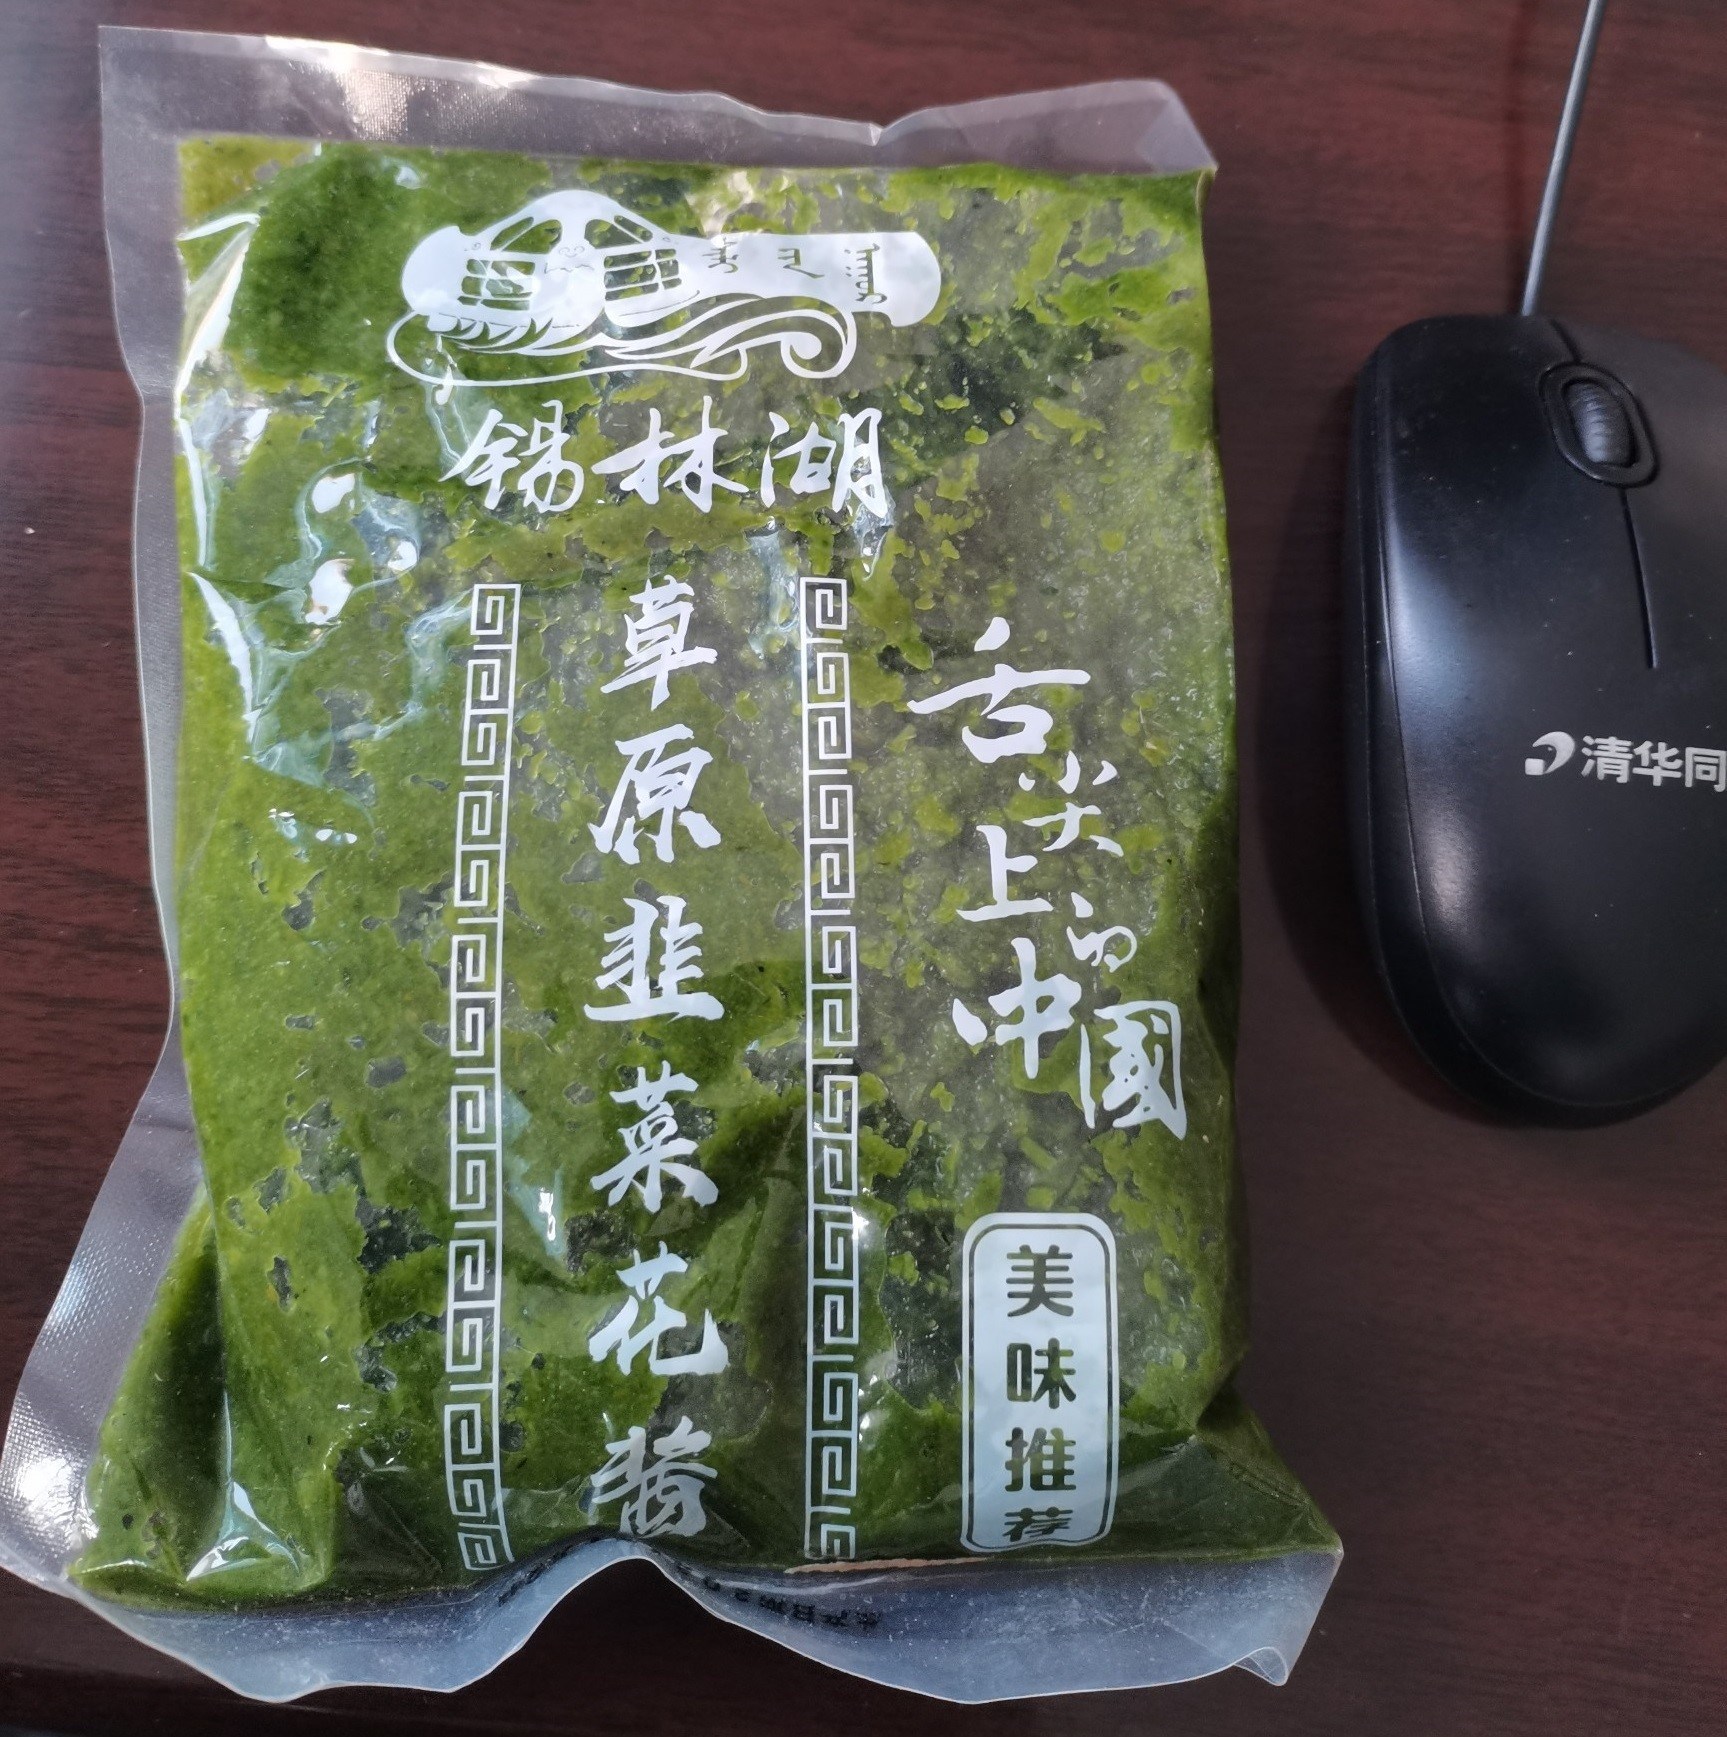 好吃的舌尖上的中国韭菜花酱内蒙古野生自制农家草原特产火锅蘸料